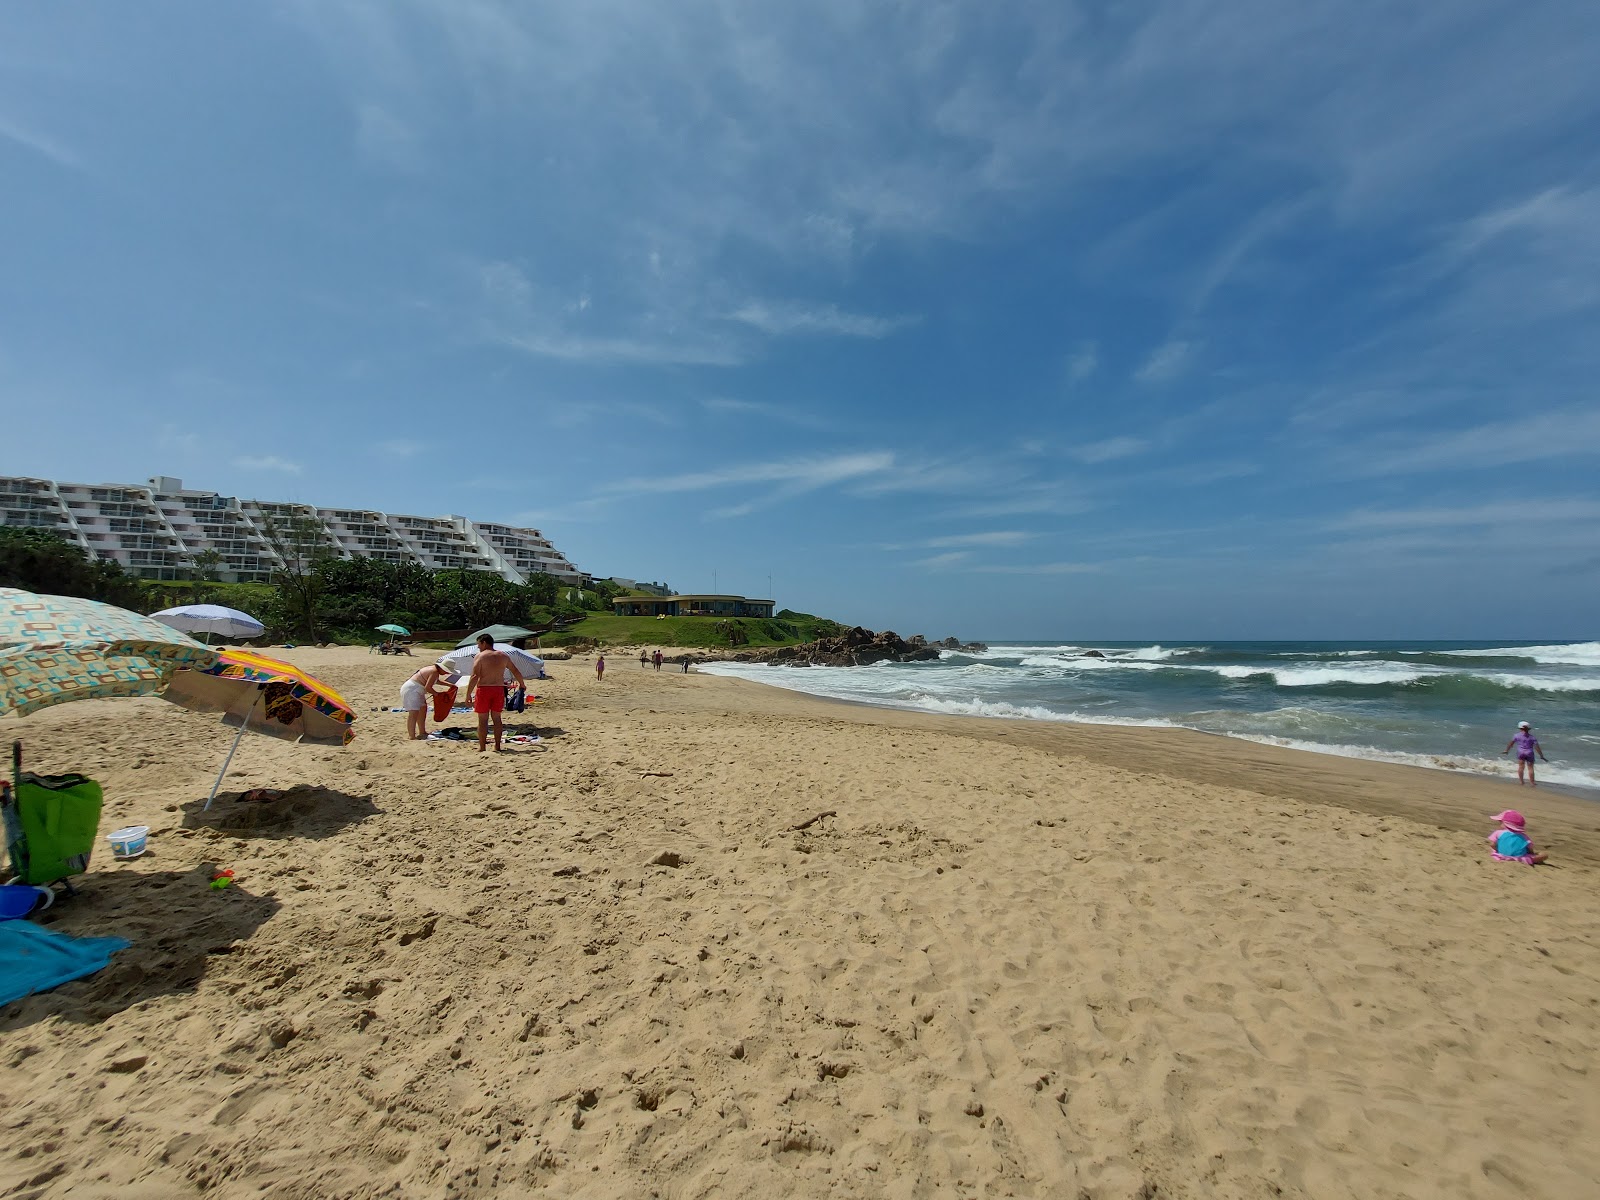 Margate beach'in fotoğrafı parlak ince kum yüzey ile